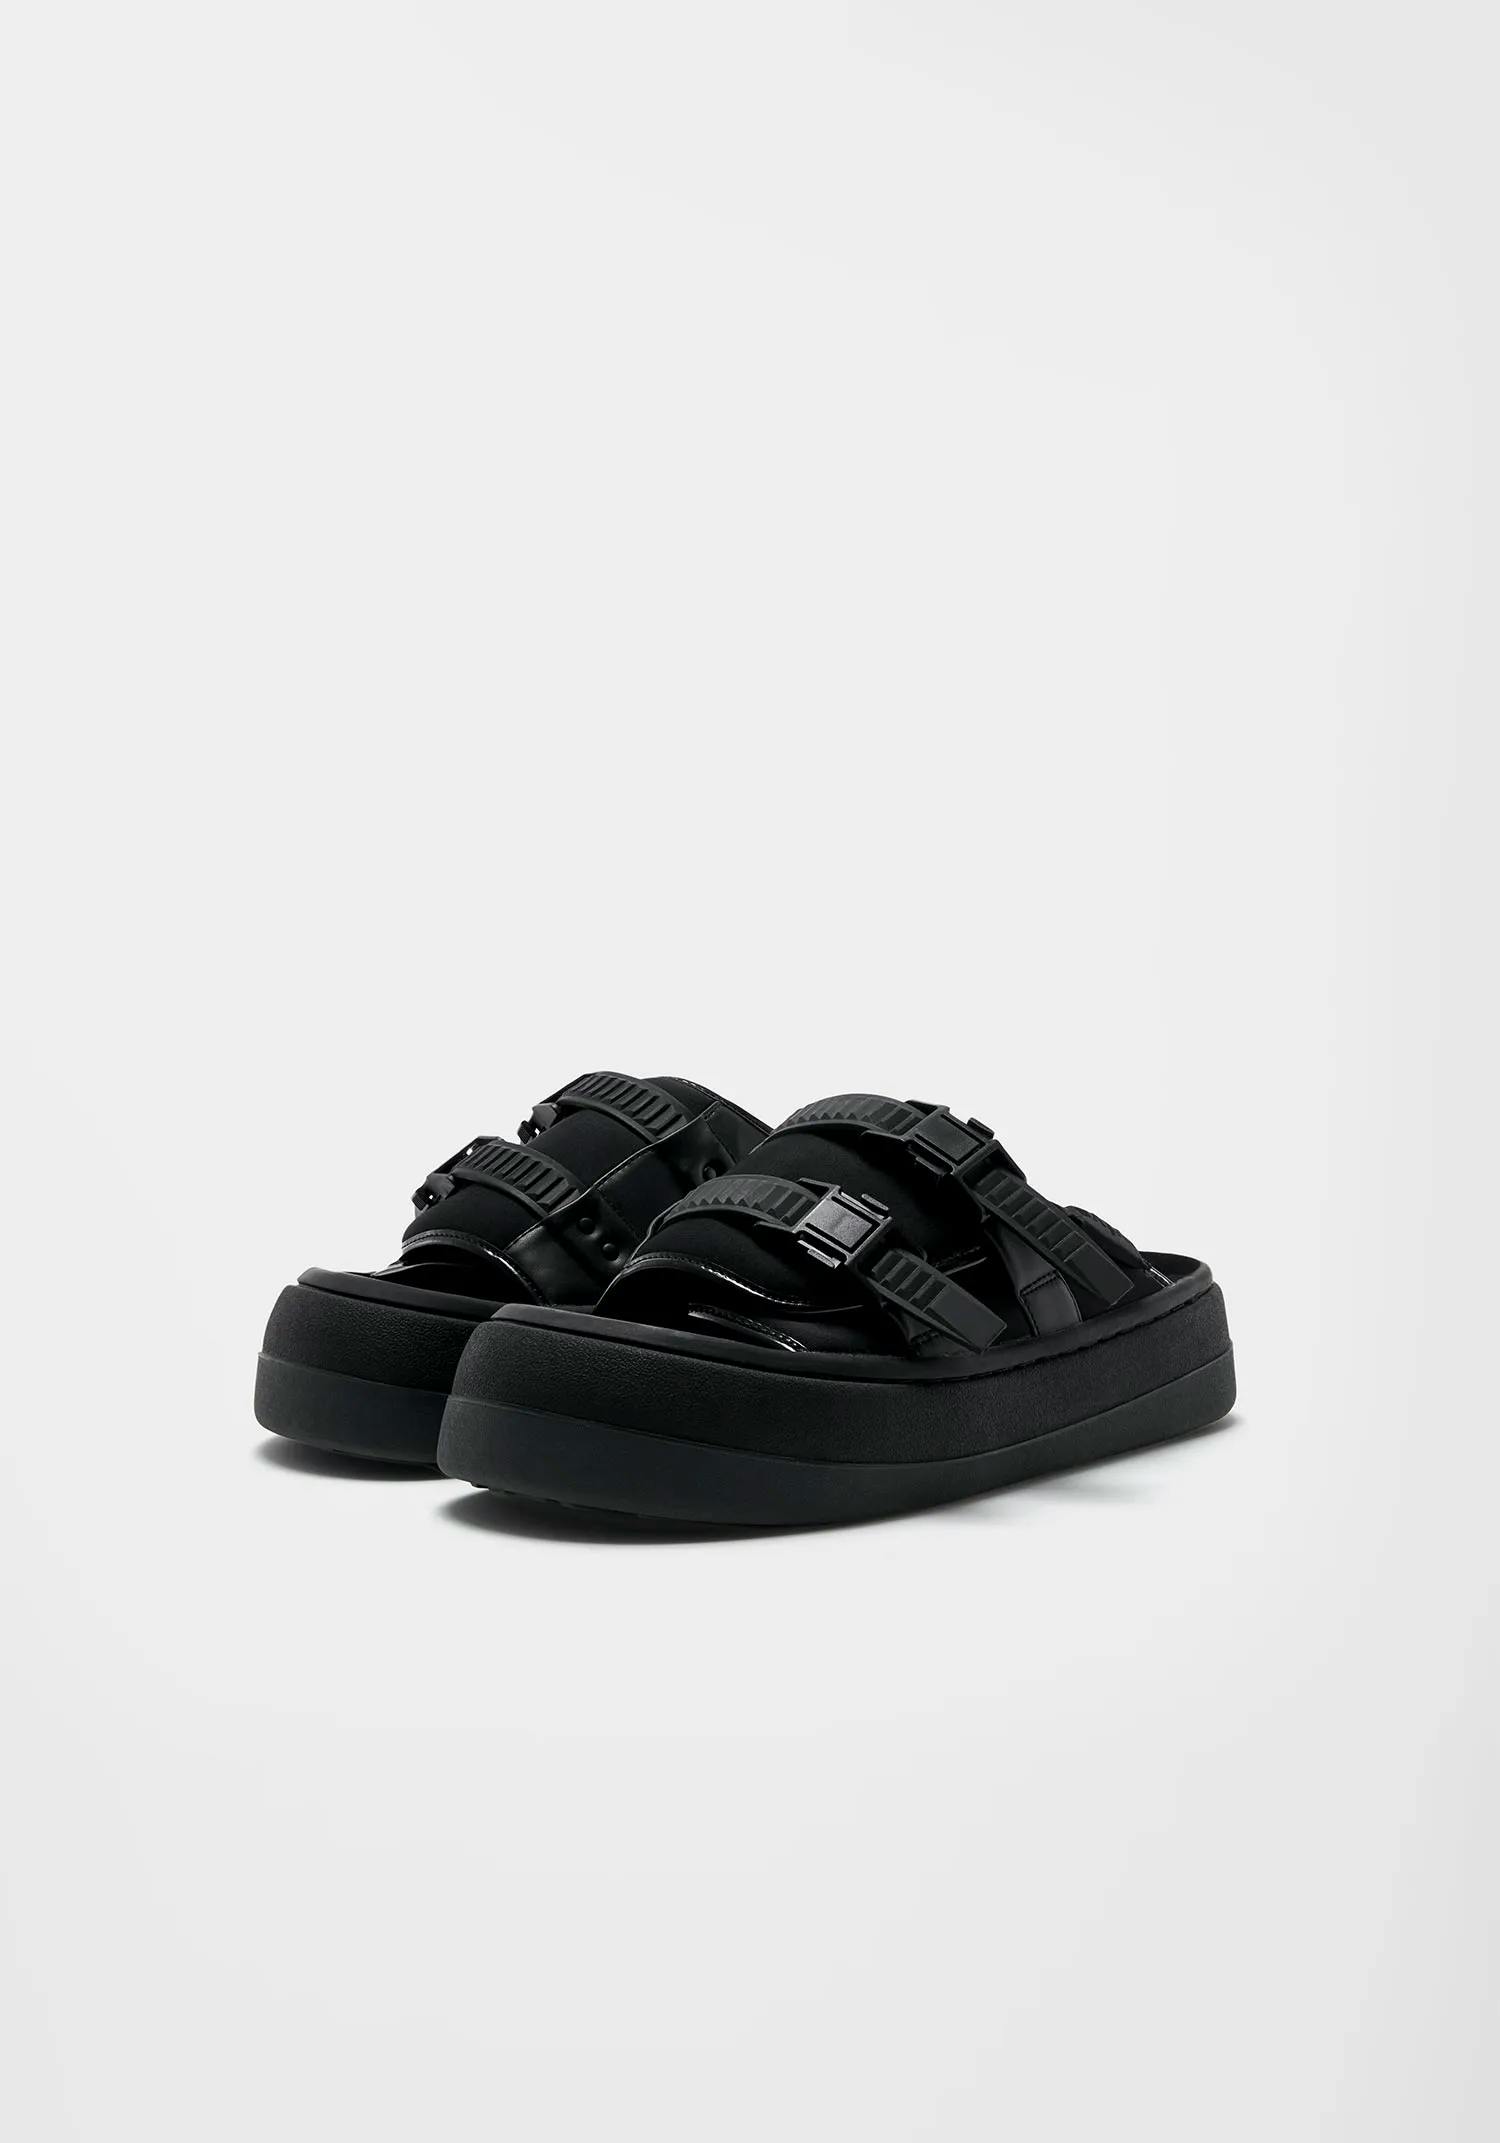 EYTYS Capri Neoprene Black Sandals